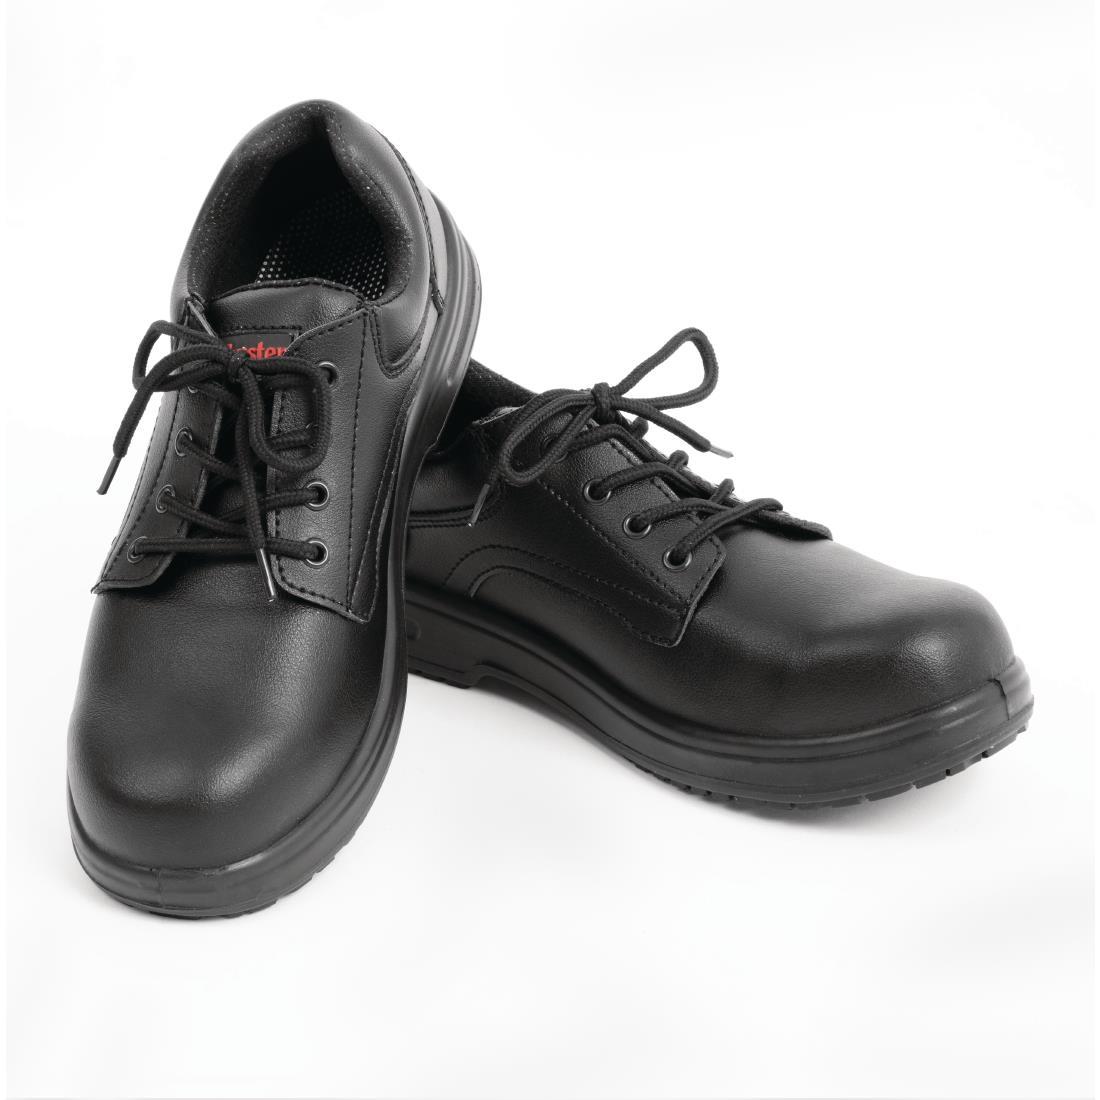 Slipbuster Basic Toe Cap Safety Shoes Black 47 - BB497-47  - 4